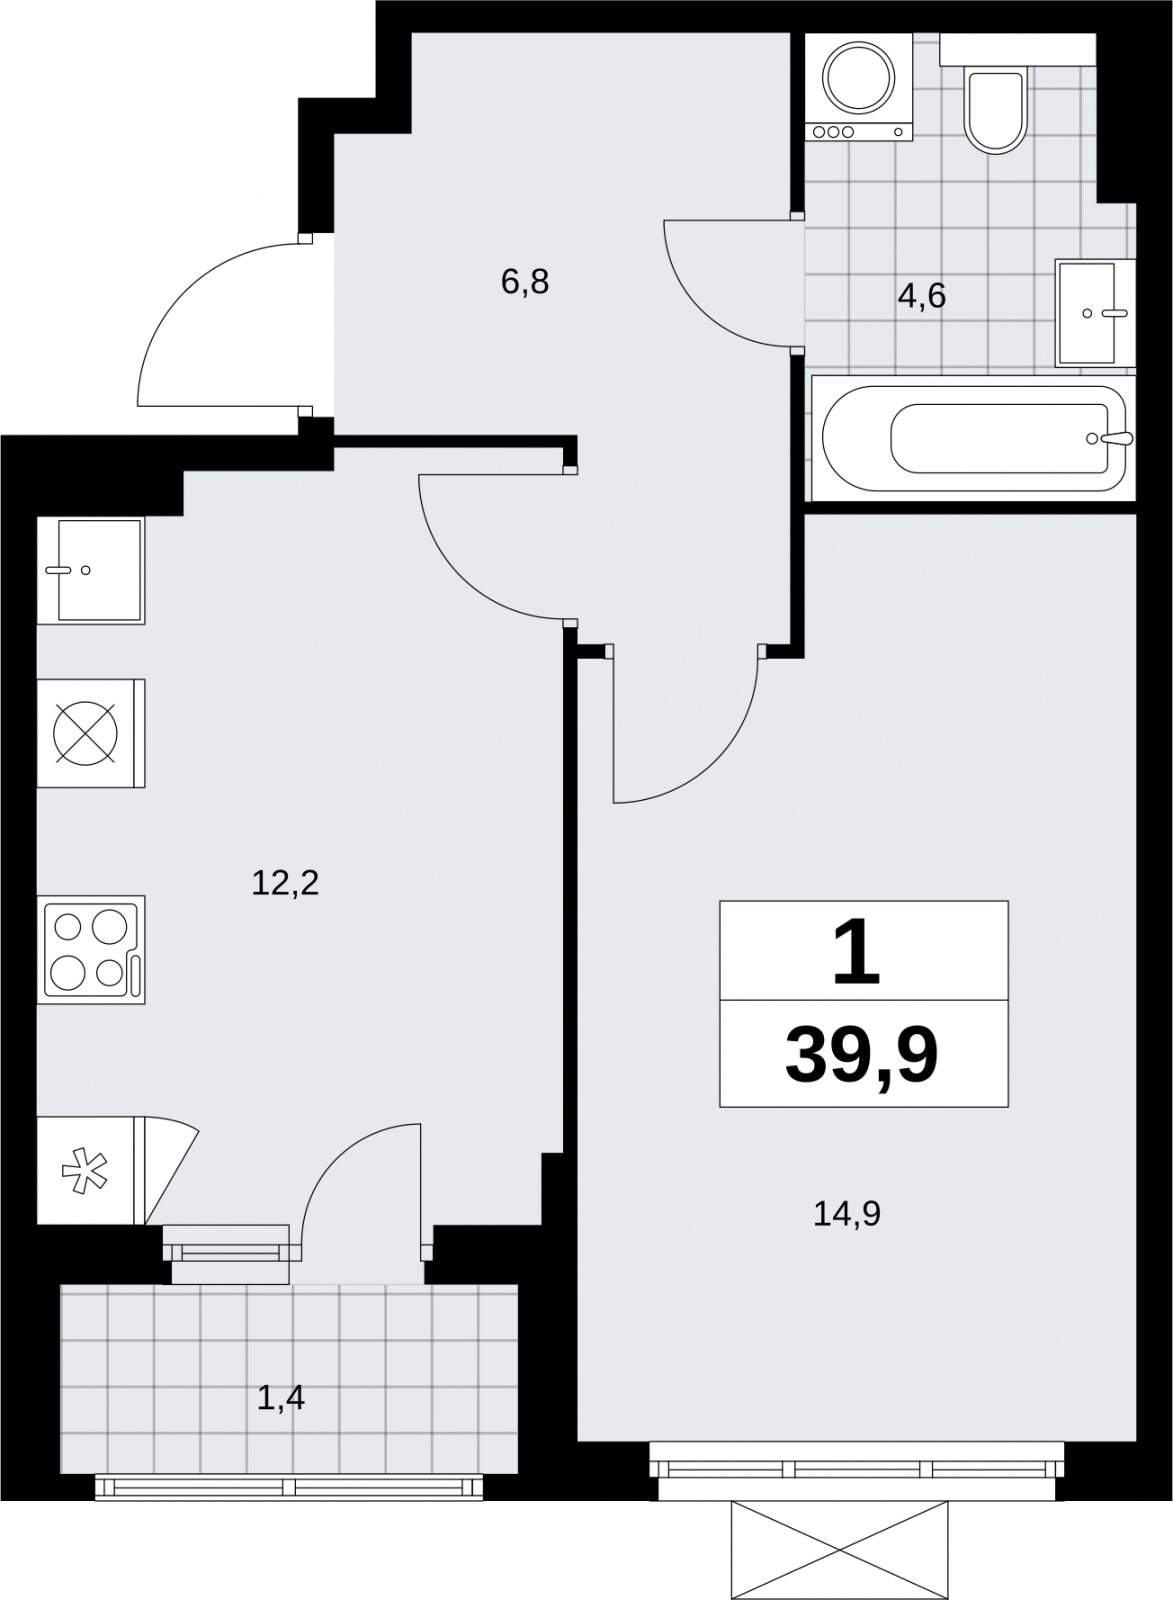 Продается однокомнатная квартира с отделкой в новом жилом комплексе, у метро